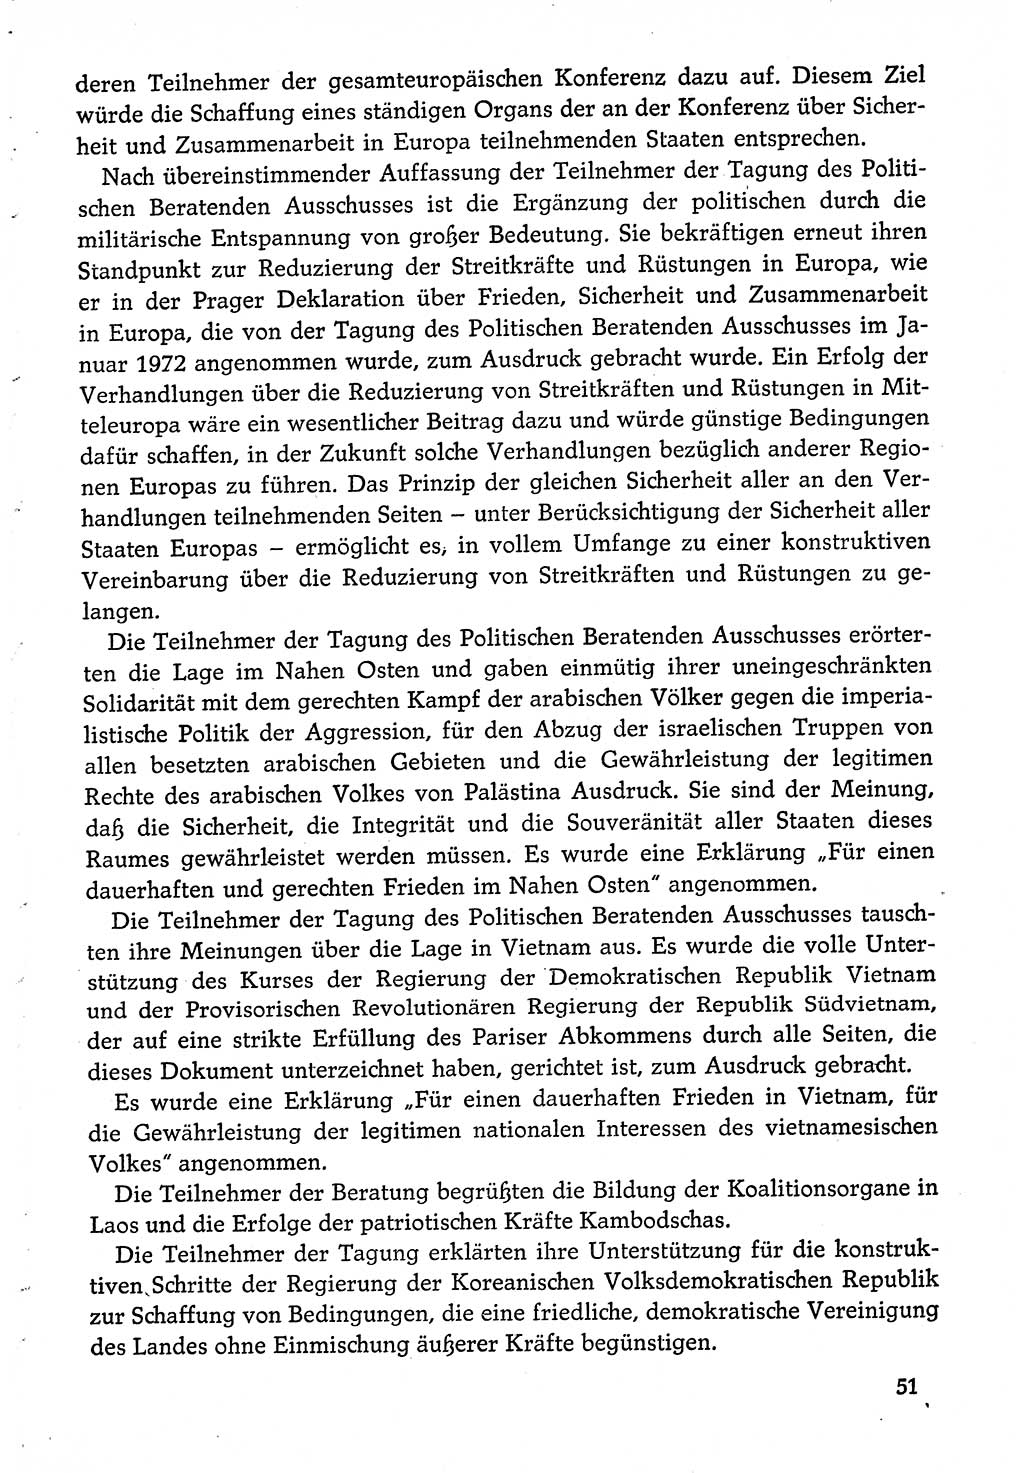 Dokumente der Sozialistischen Einheitspartei Deutschlands (SED) [Deutsche Demokratische Republik (DDR)] 1974-1975, Seite 51 (Dok. SED DDR 1978, Bd. ⅩⅤ, S. 51)